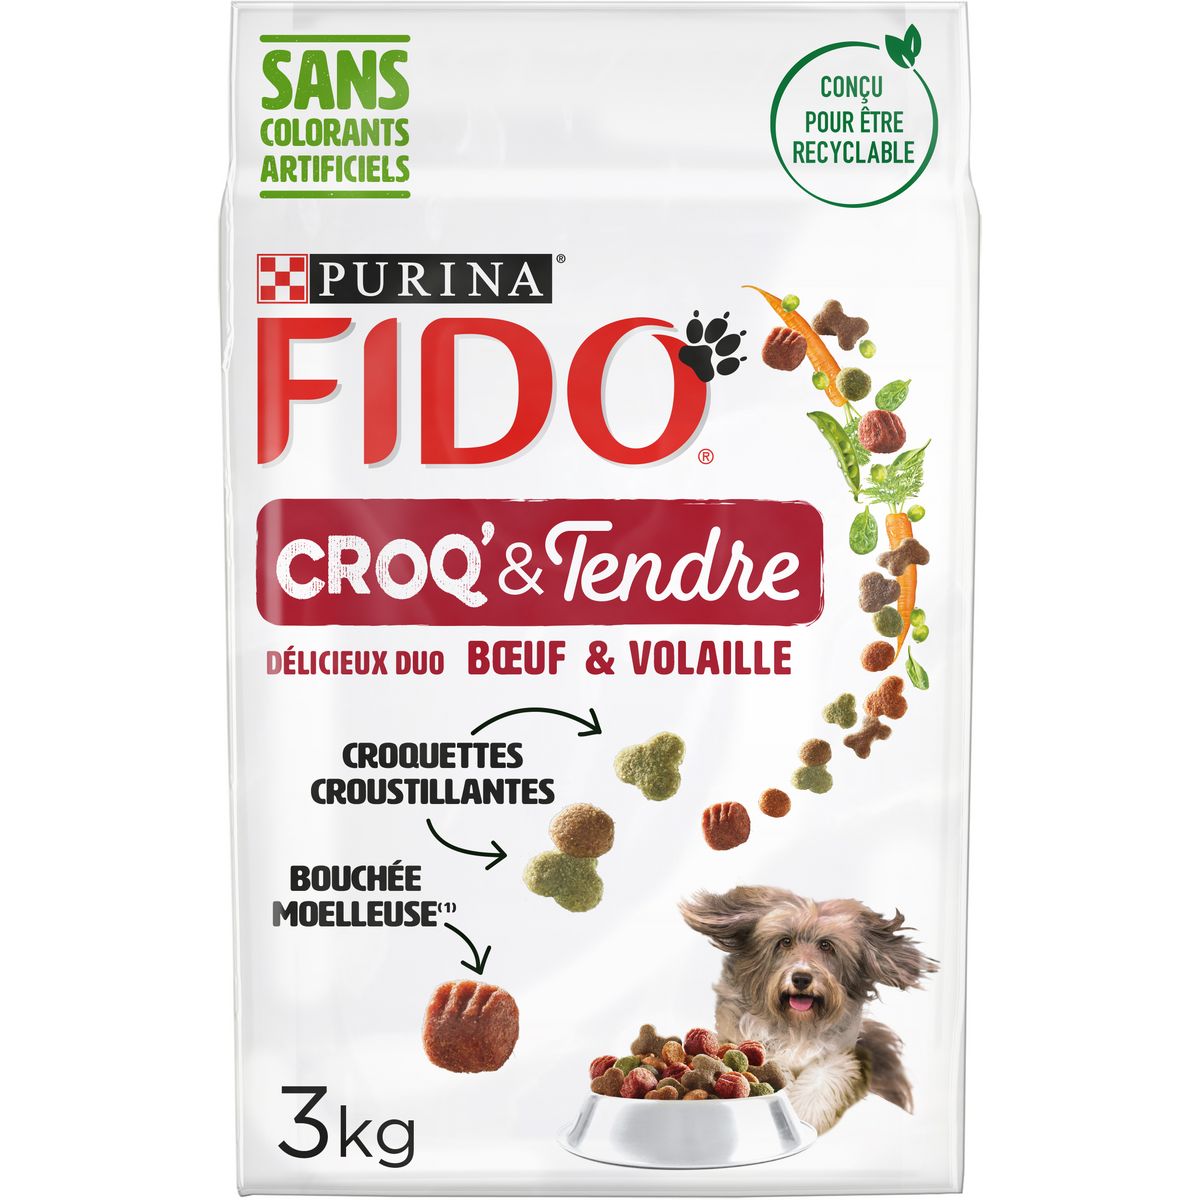 FIDO Croq & tendre croquettes moelleuses au boeuf pour chien 3kg